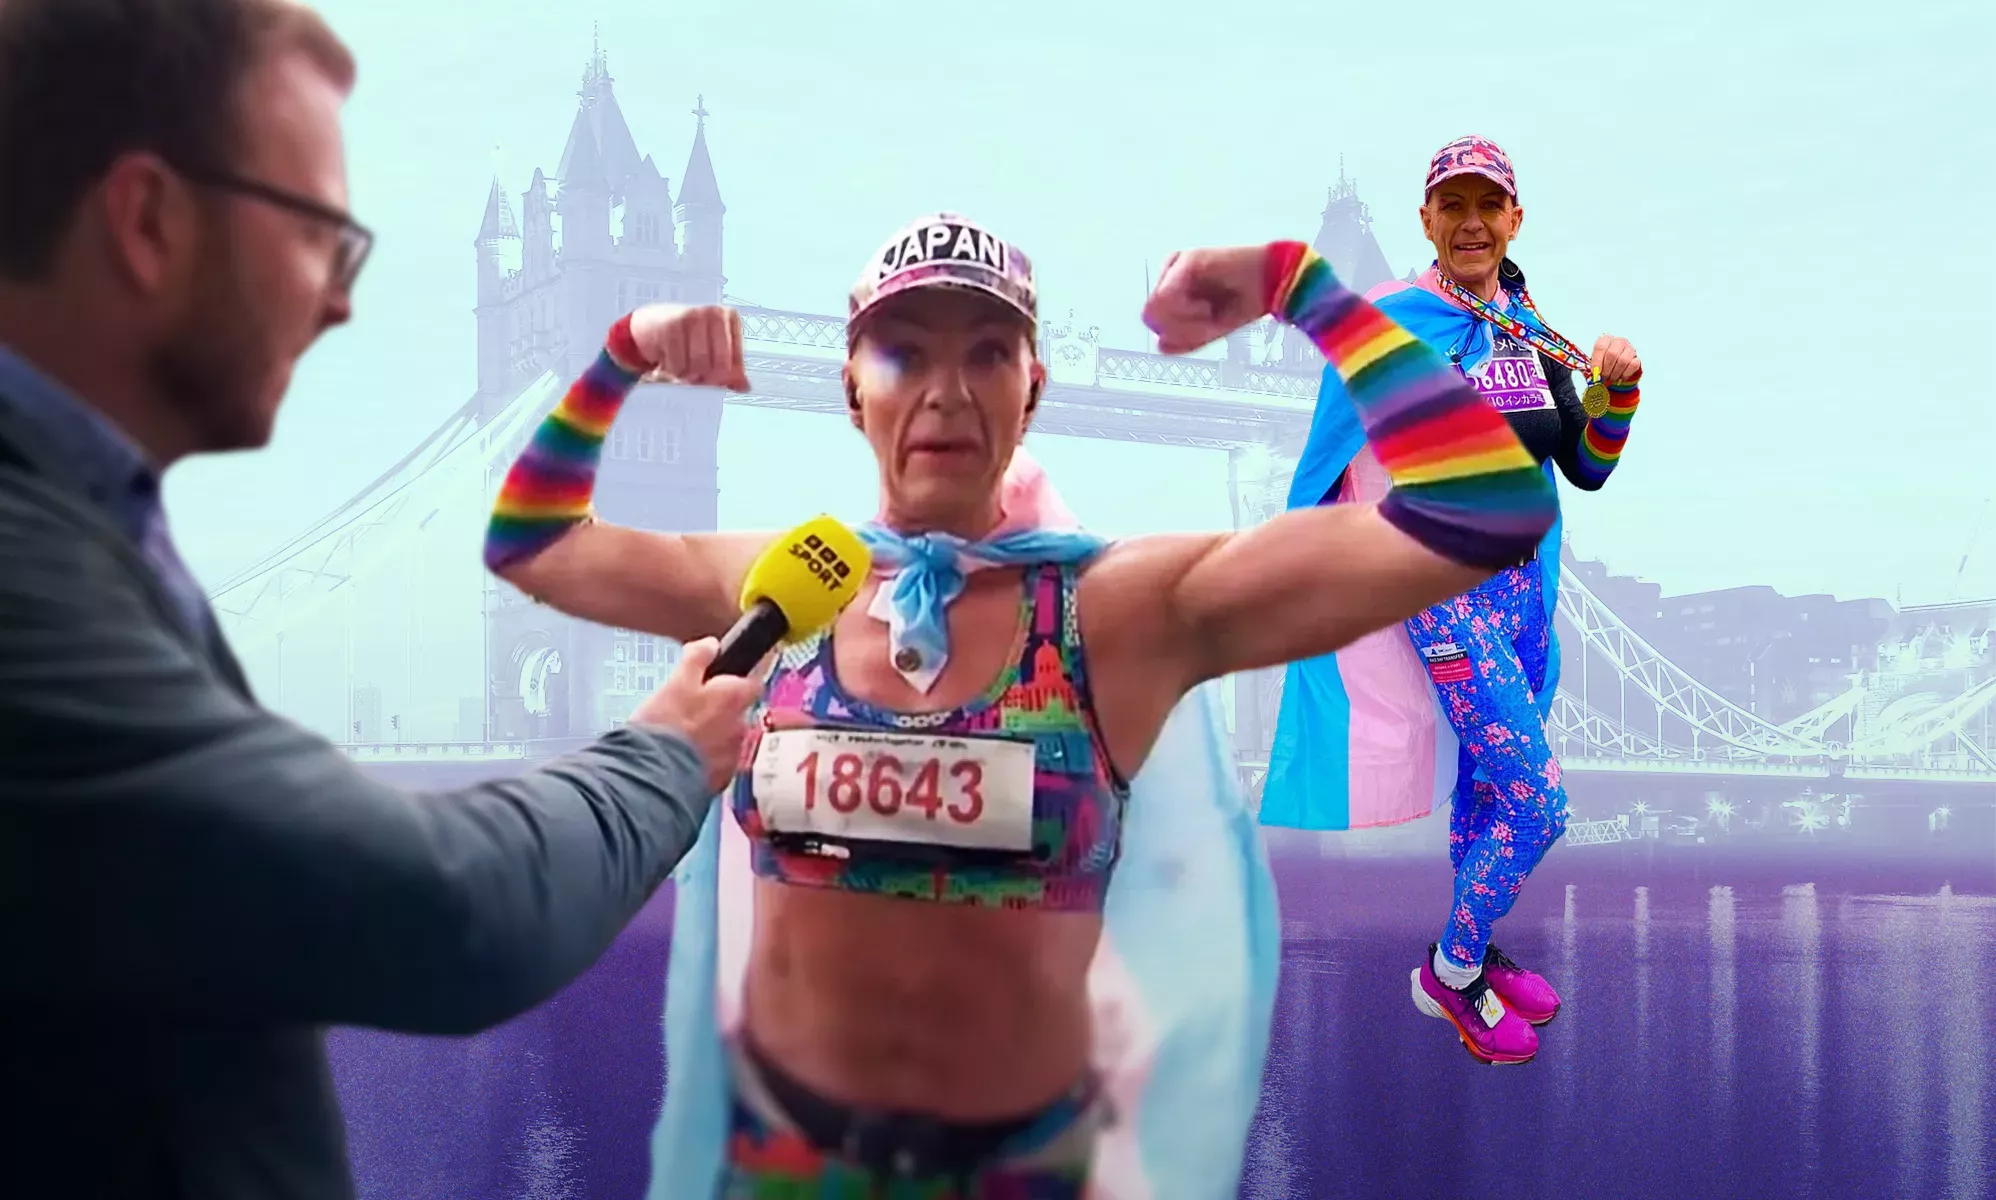 Los fanáticos están furiosos porque una mujer trans corrió en el Maratón de Londres. Llegó en el puesto 6160